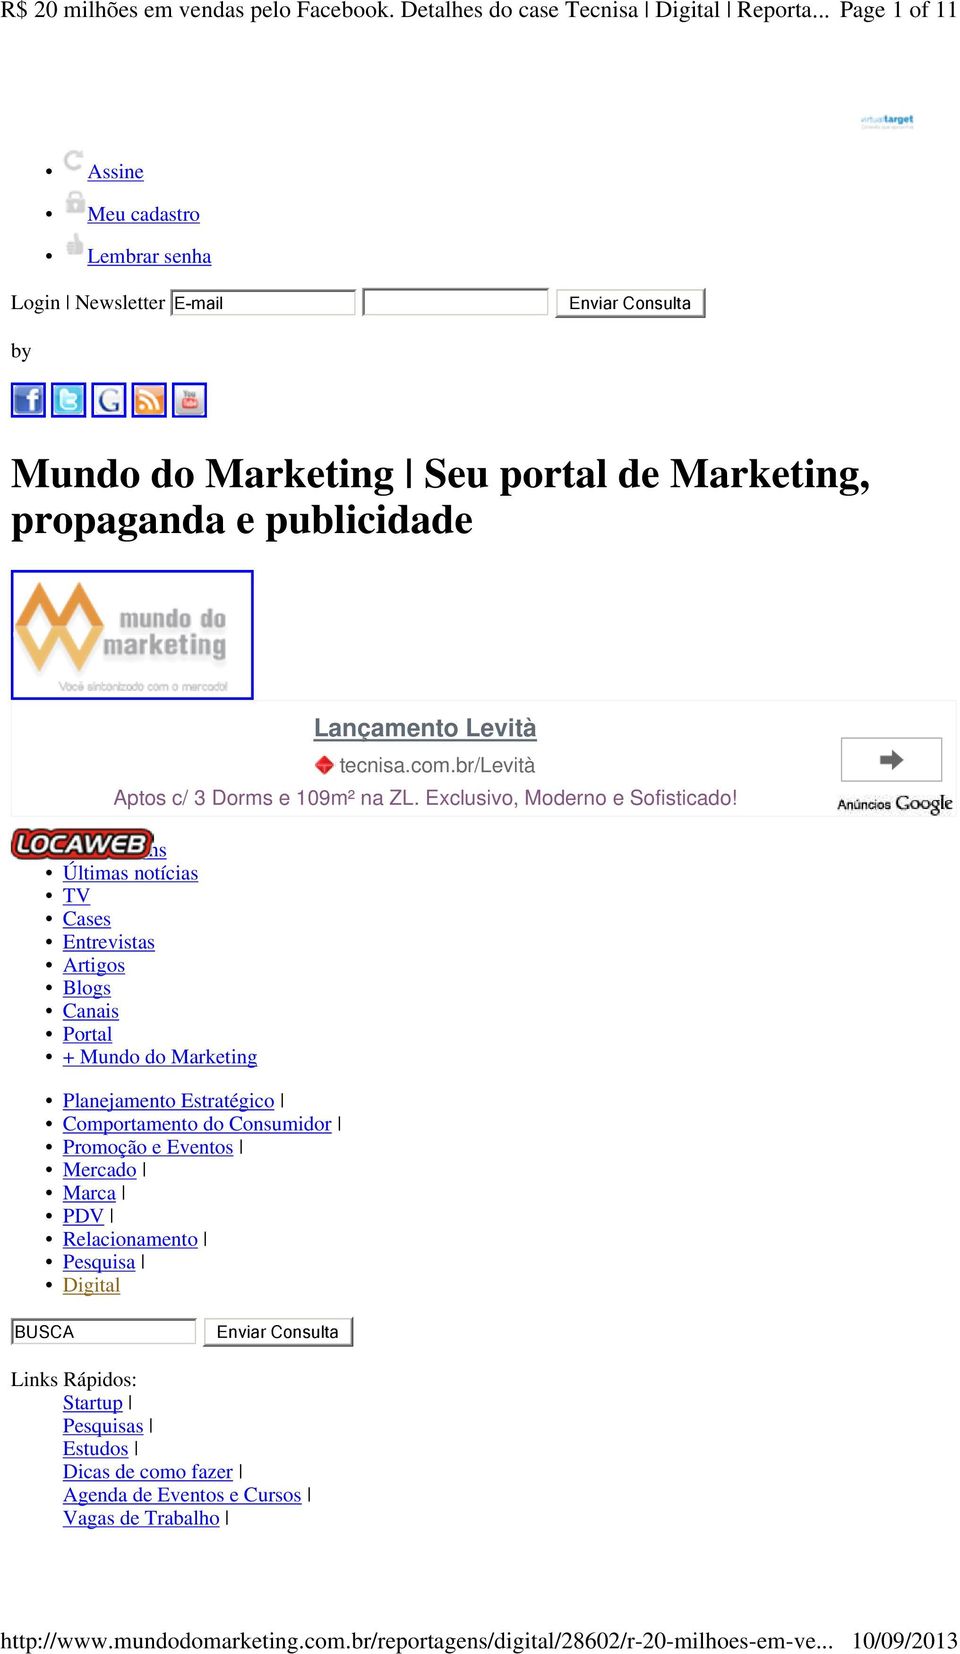 Reportagens Últimas notícias TV Cases Entrevistas Artigos Blogs Canais Portal + Mundo do Marketing Planejamento Estratégico Comportamento do Consumidor